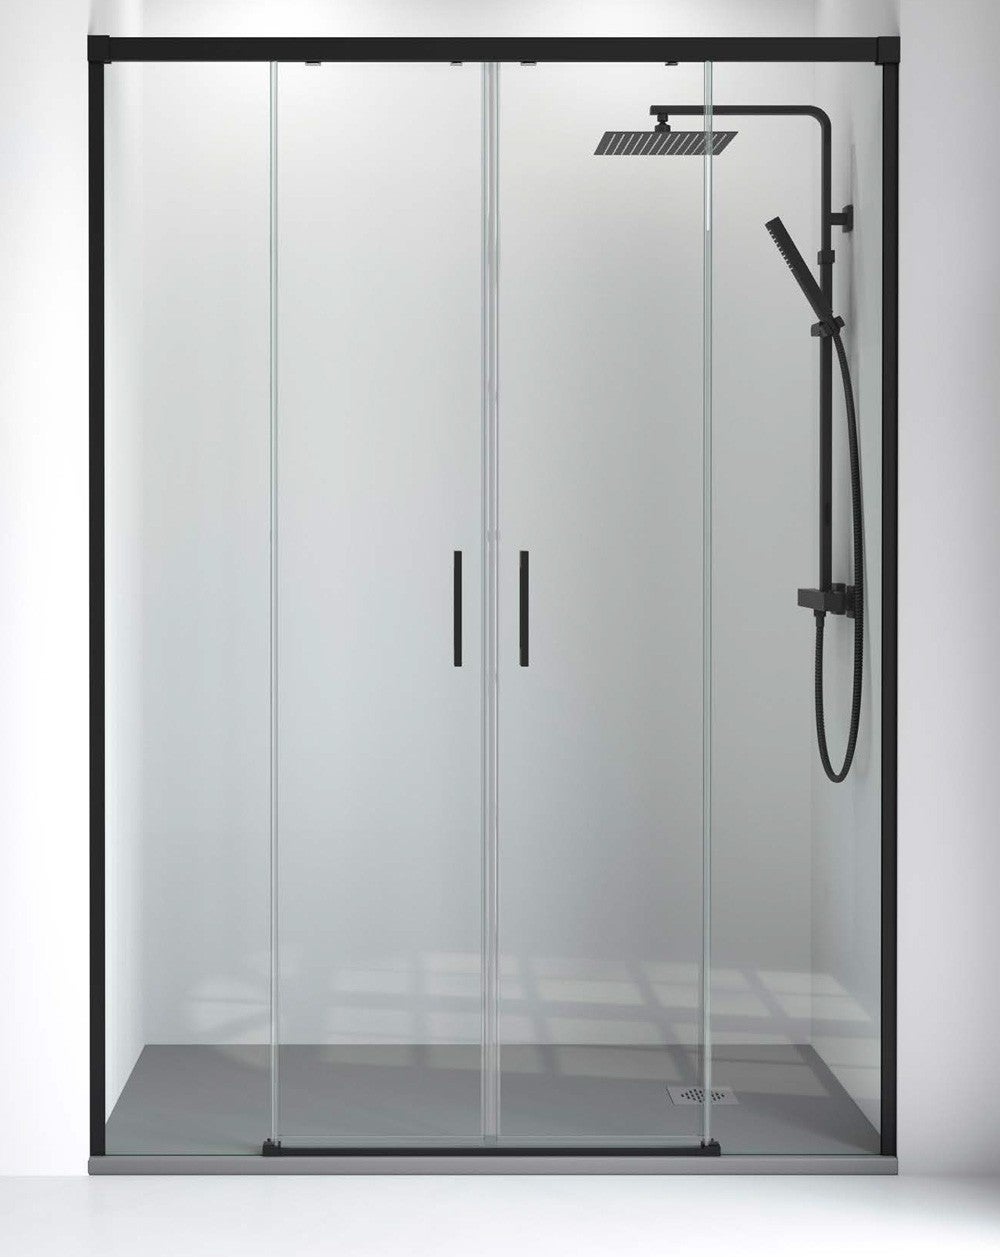 RAN, 1 unidad de 2 metros, vierteaguas y de cierre mampara ducha baño, Ala  23 mm, Caja 6/8. REF M090